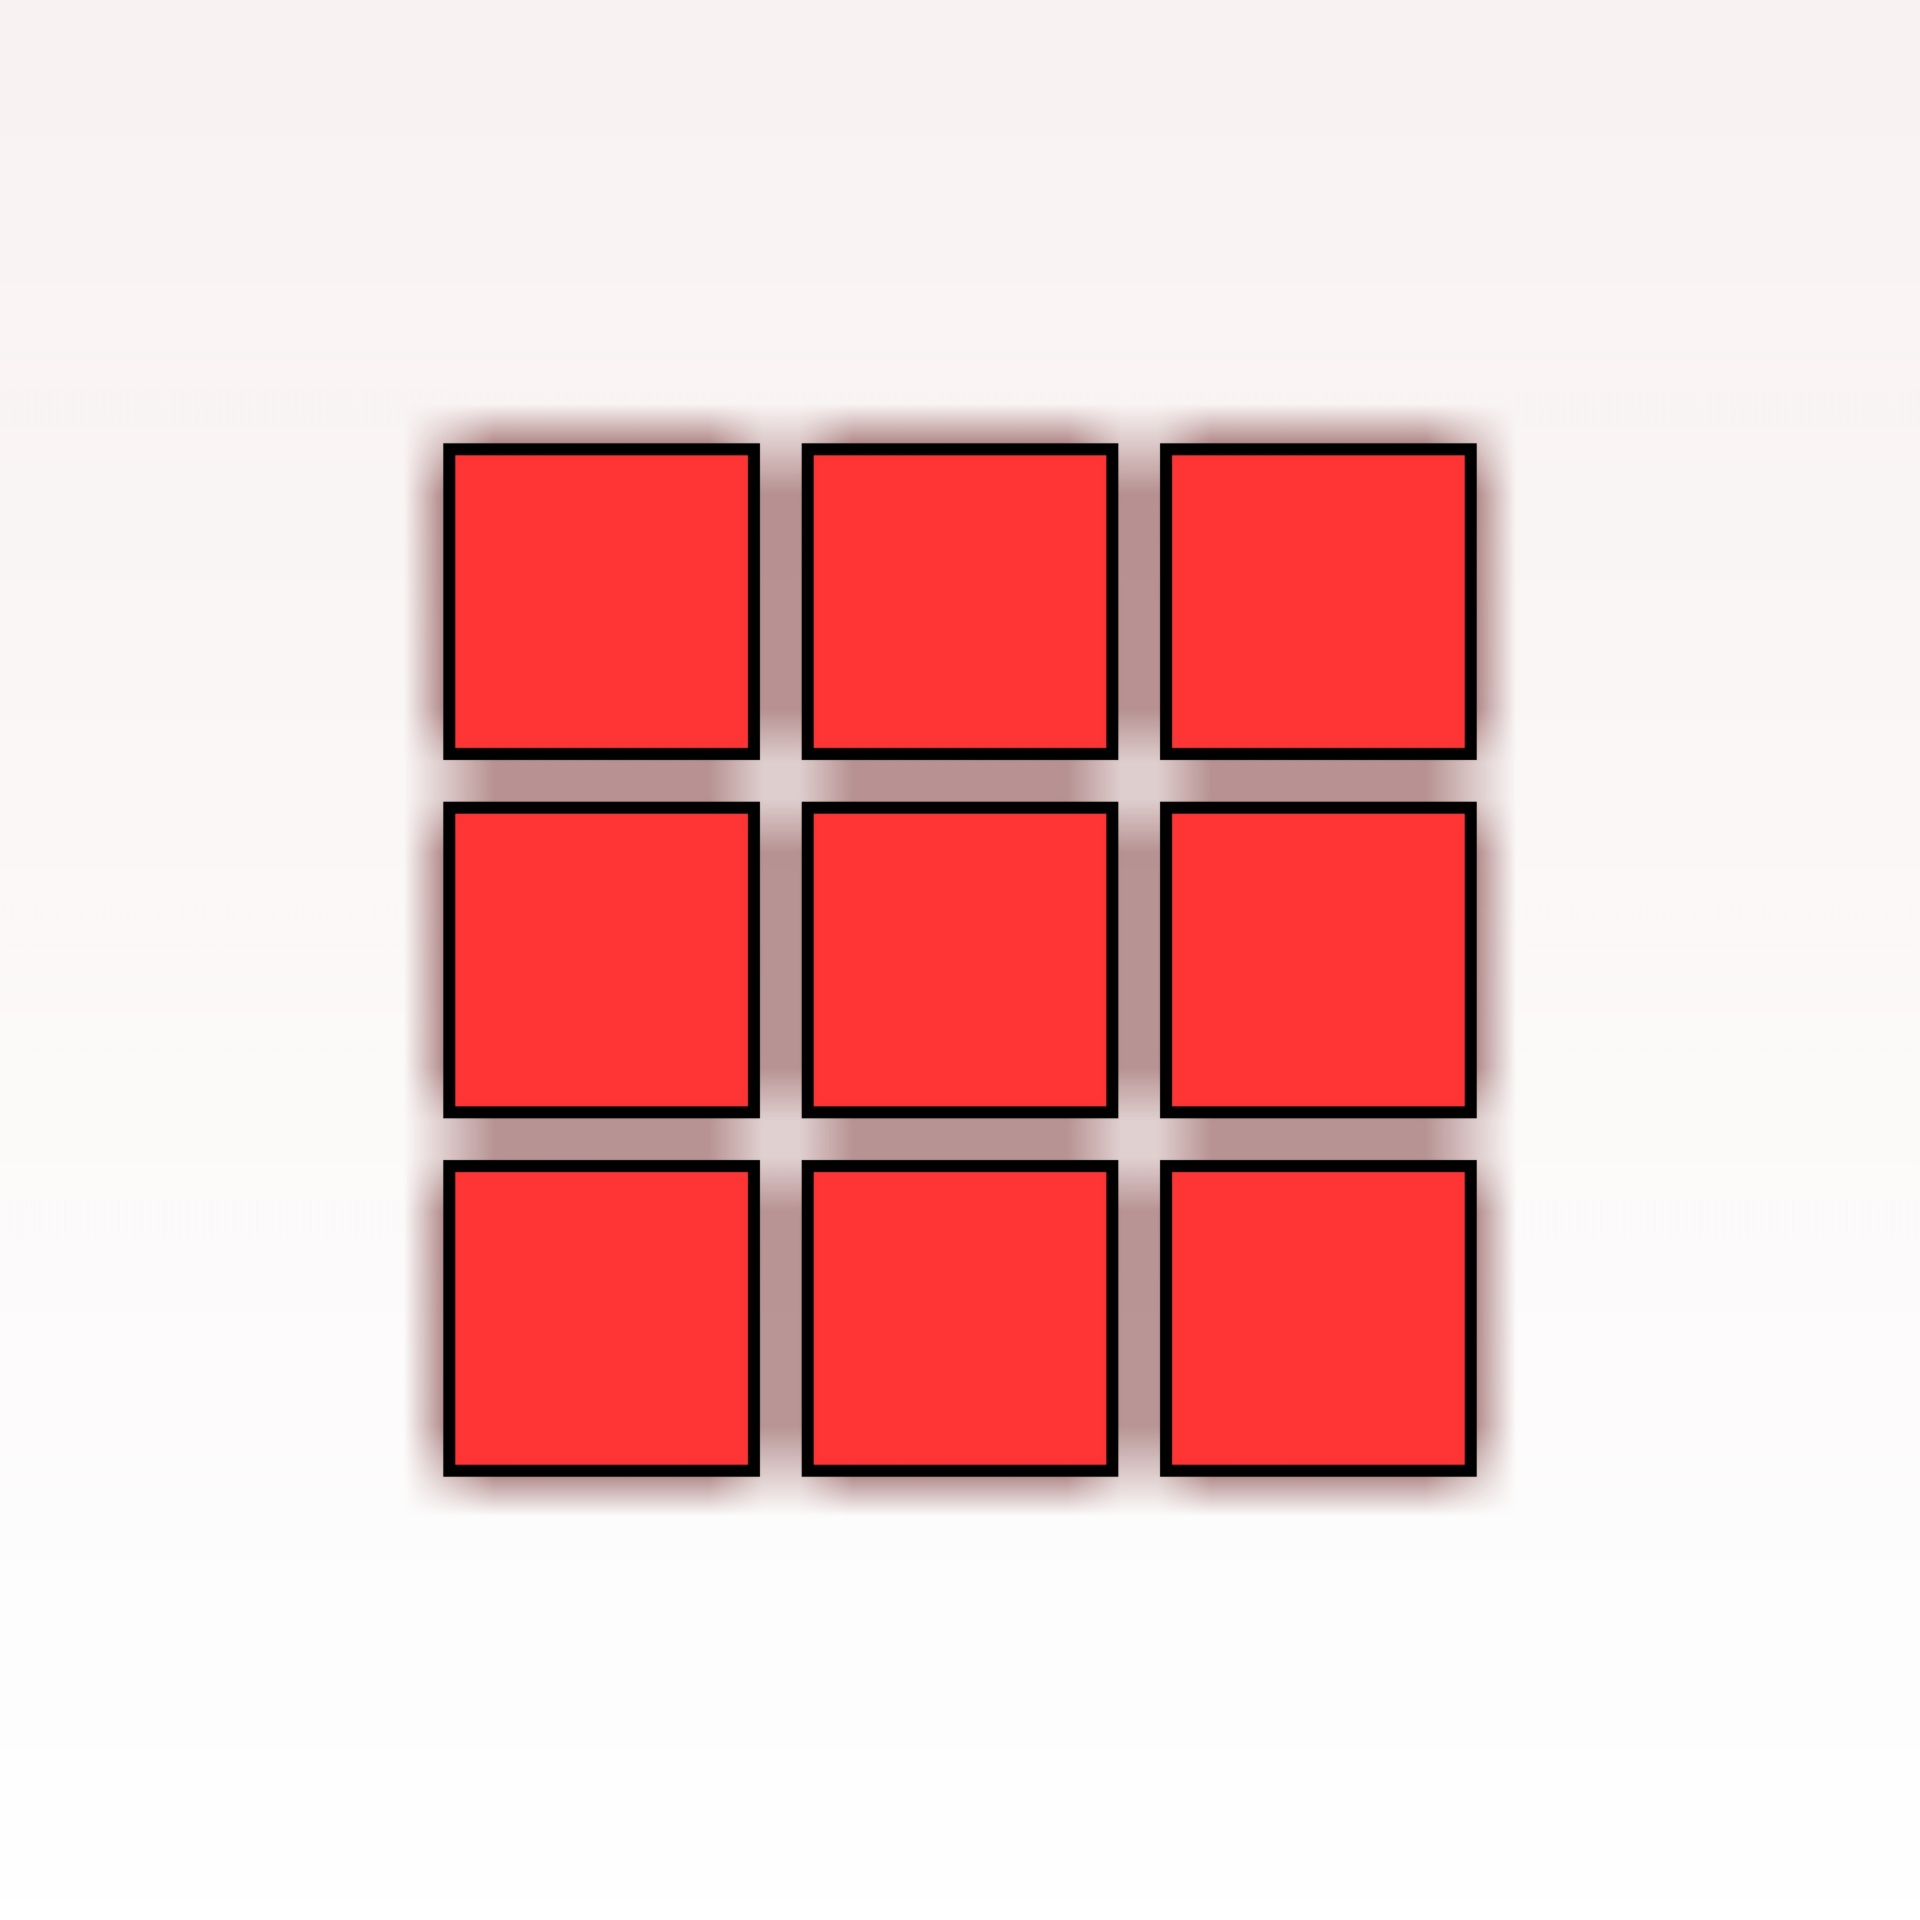 Звуки квадратики. Красный квадрат. Красный квадратик. Квадраты раздаточный материал. Красный квадрат на белом фоне.